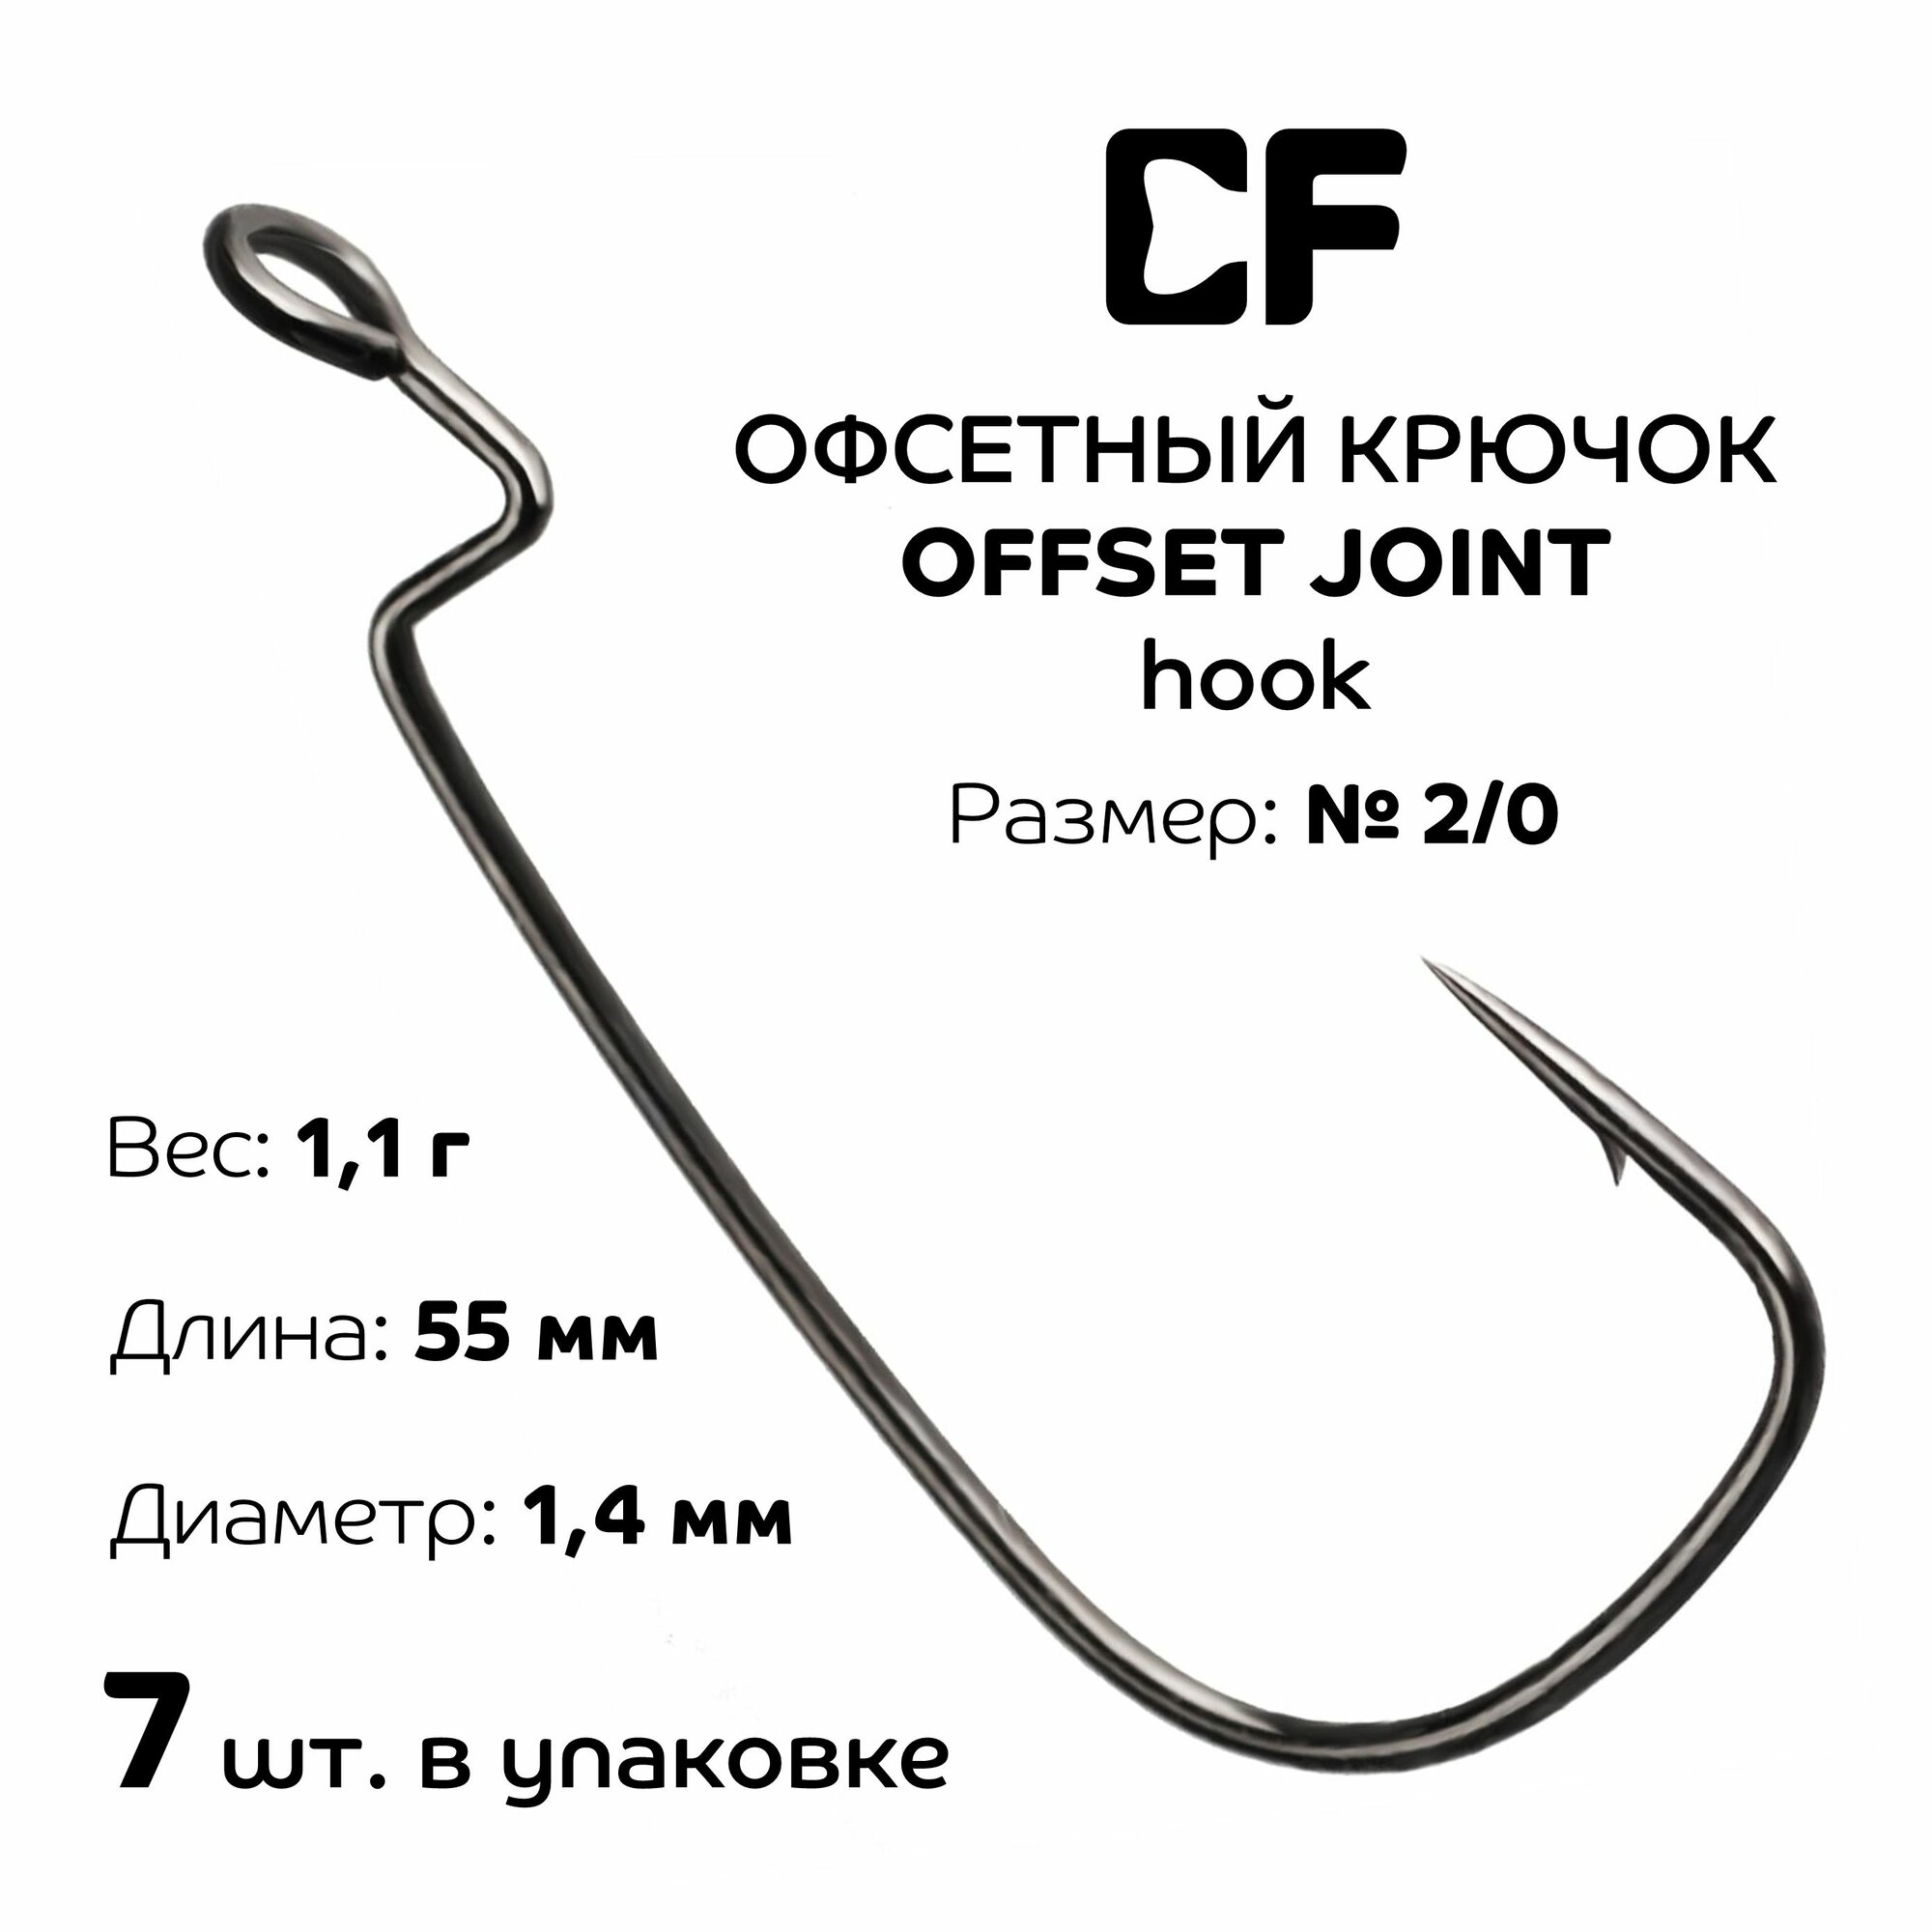 Офсетный крючок CF Offset joint hook №2/0 7 шт